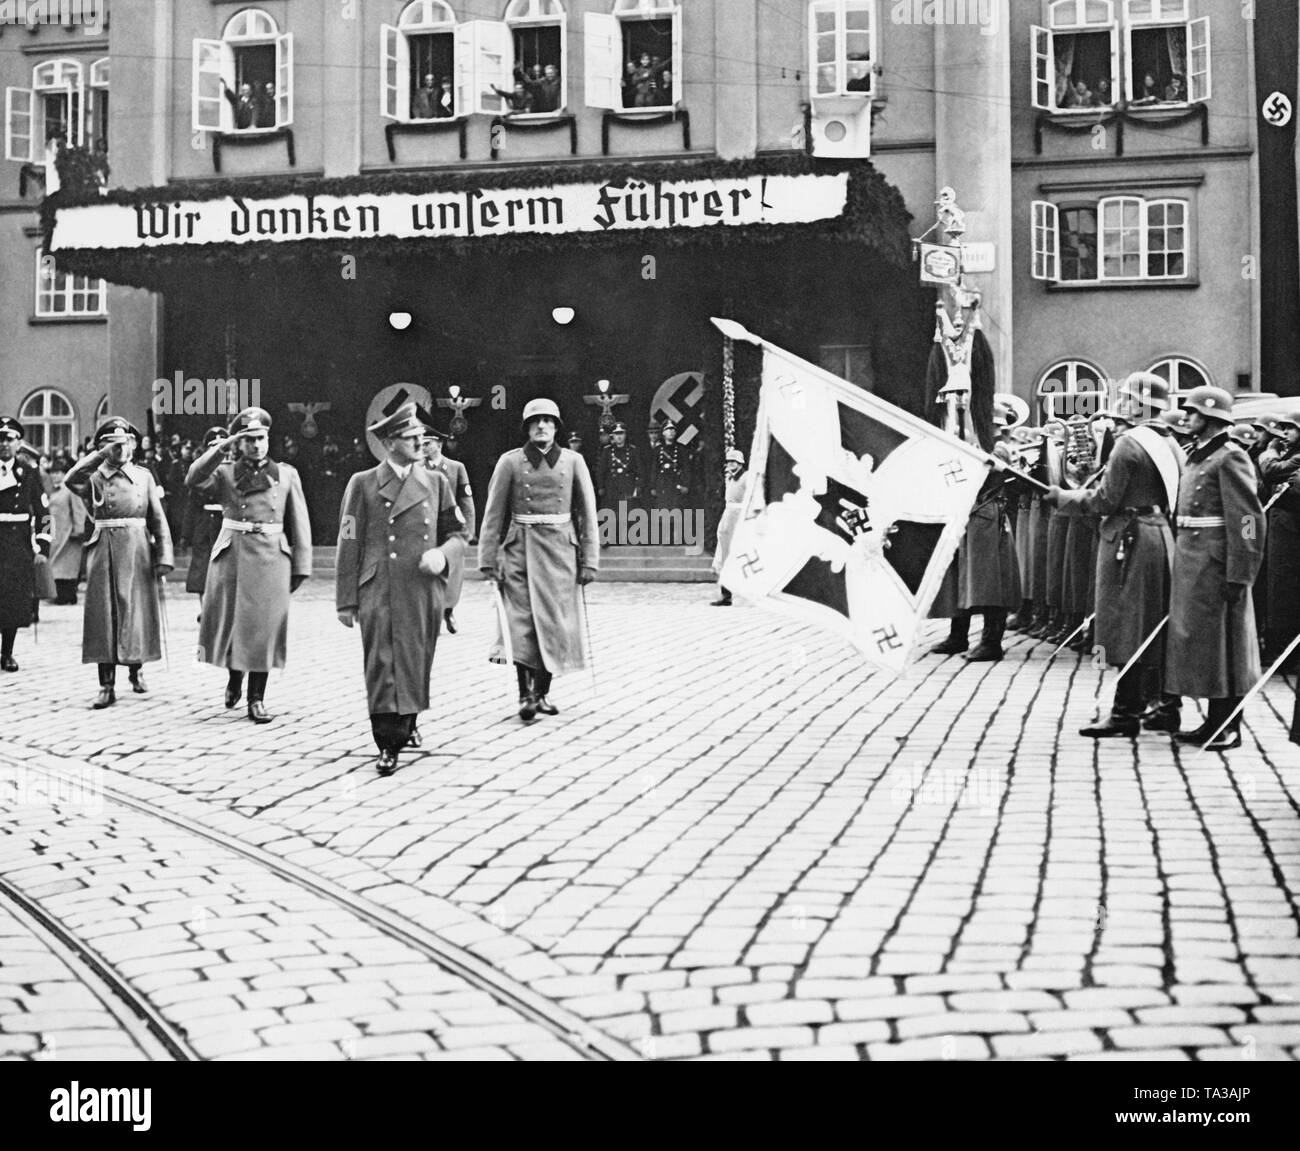 Hitler in Reichenberg (heute Liberec) am 2. Oktober 1938. Eine Infanterie Regiment stellt ihn seine REGIMENTAL Farben. Hinter Hitler, ein Banner mit der Aufschrift "Wir danken unserem Führer!' Stockfoto